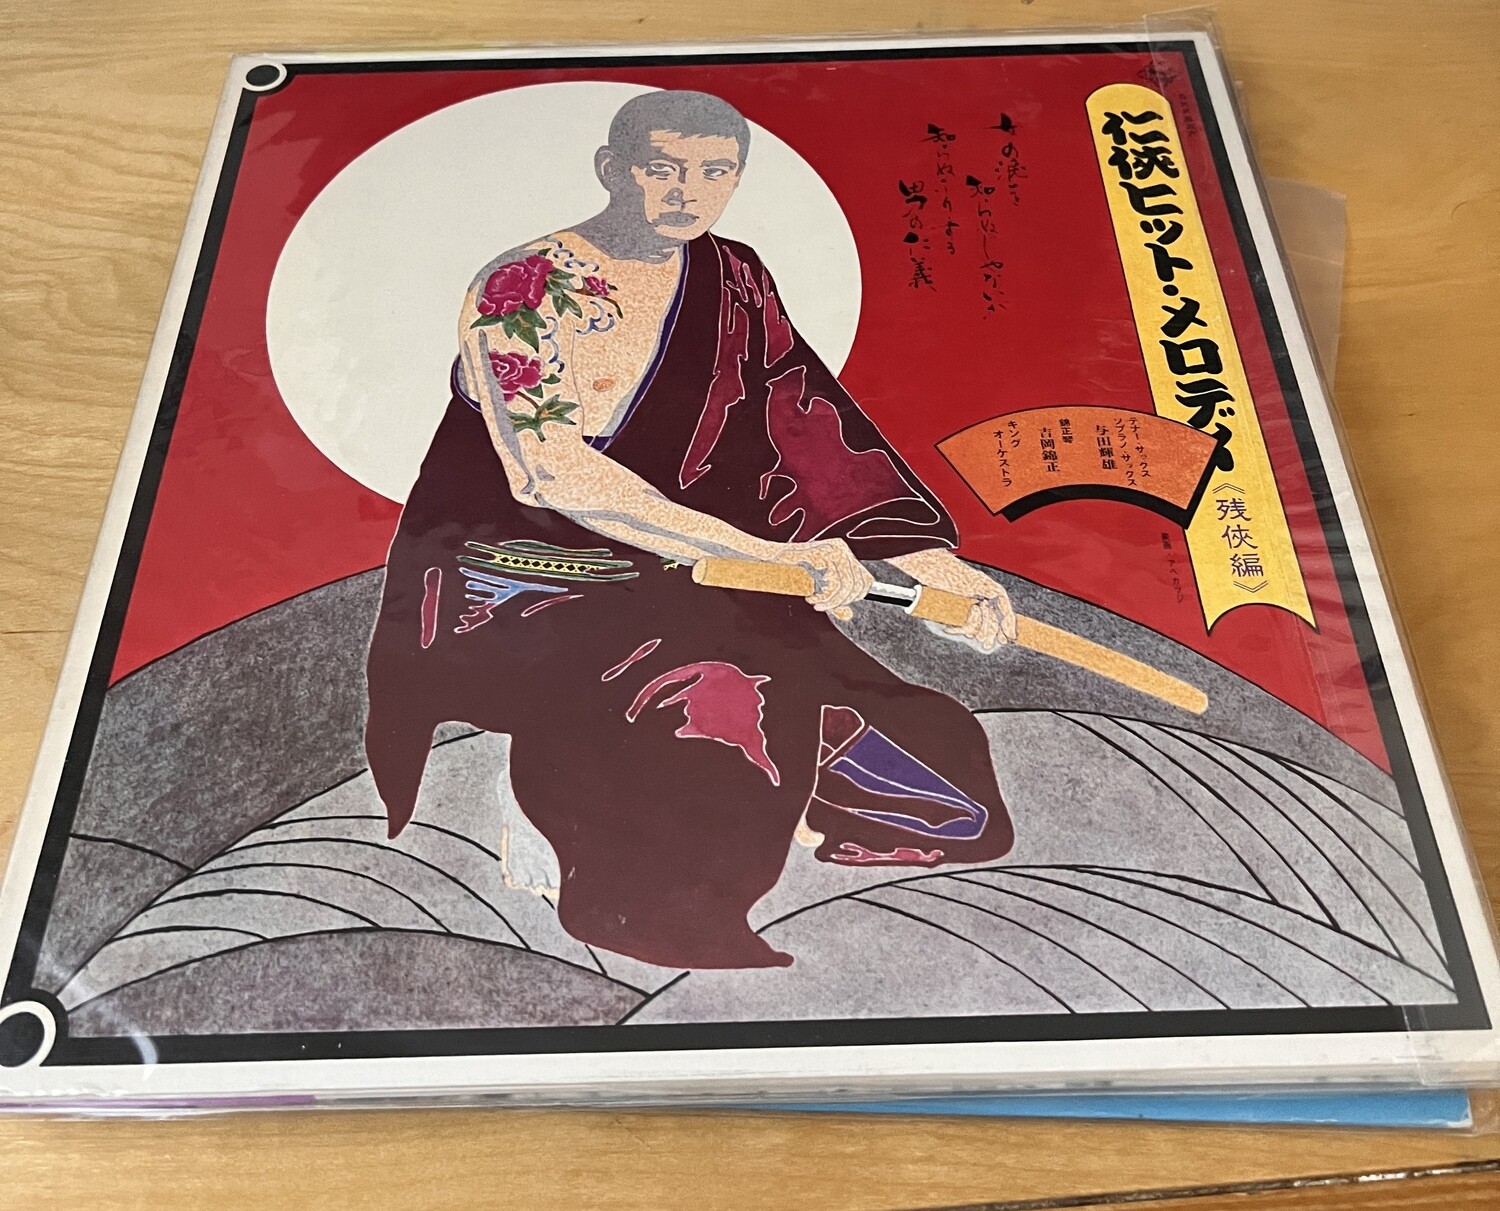 RED AND YELLOW SAMURAI OST LP WAV